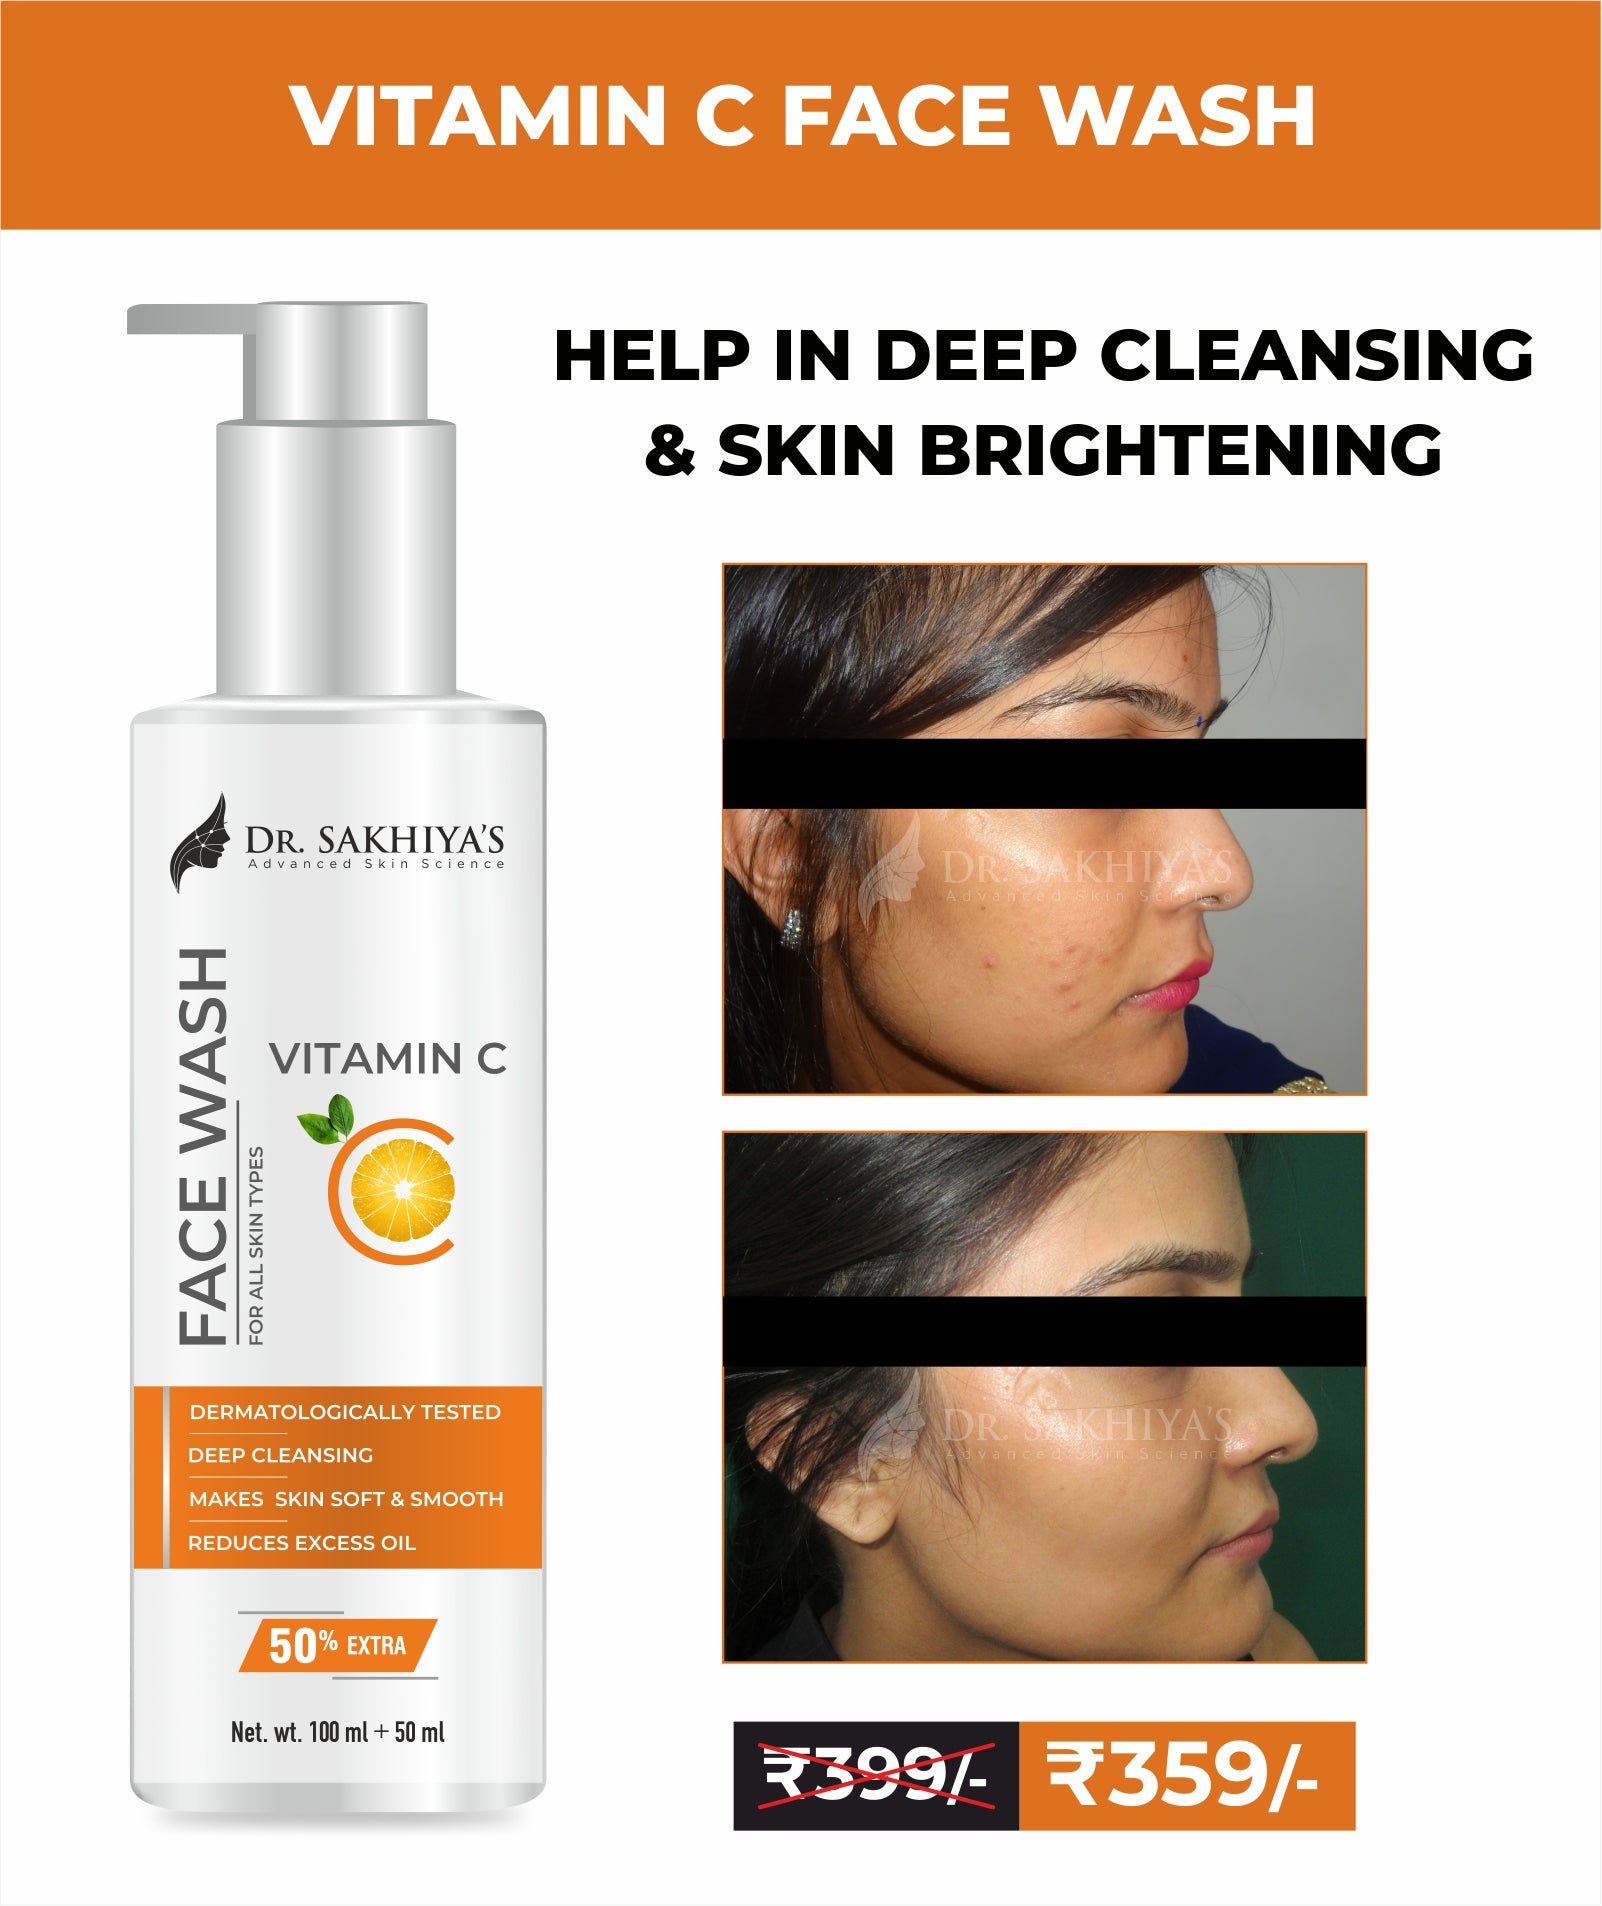 Vitamin C facewash - Dr. Sakhiya's